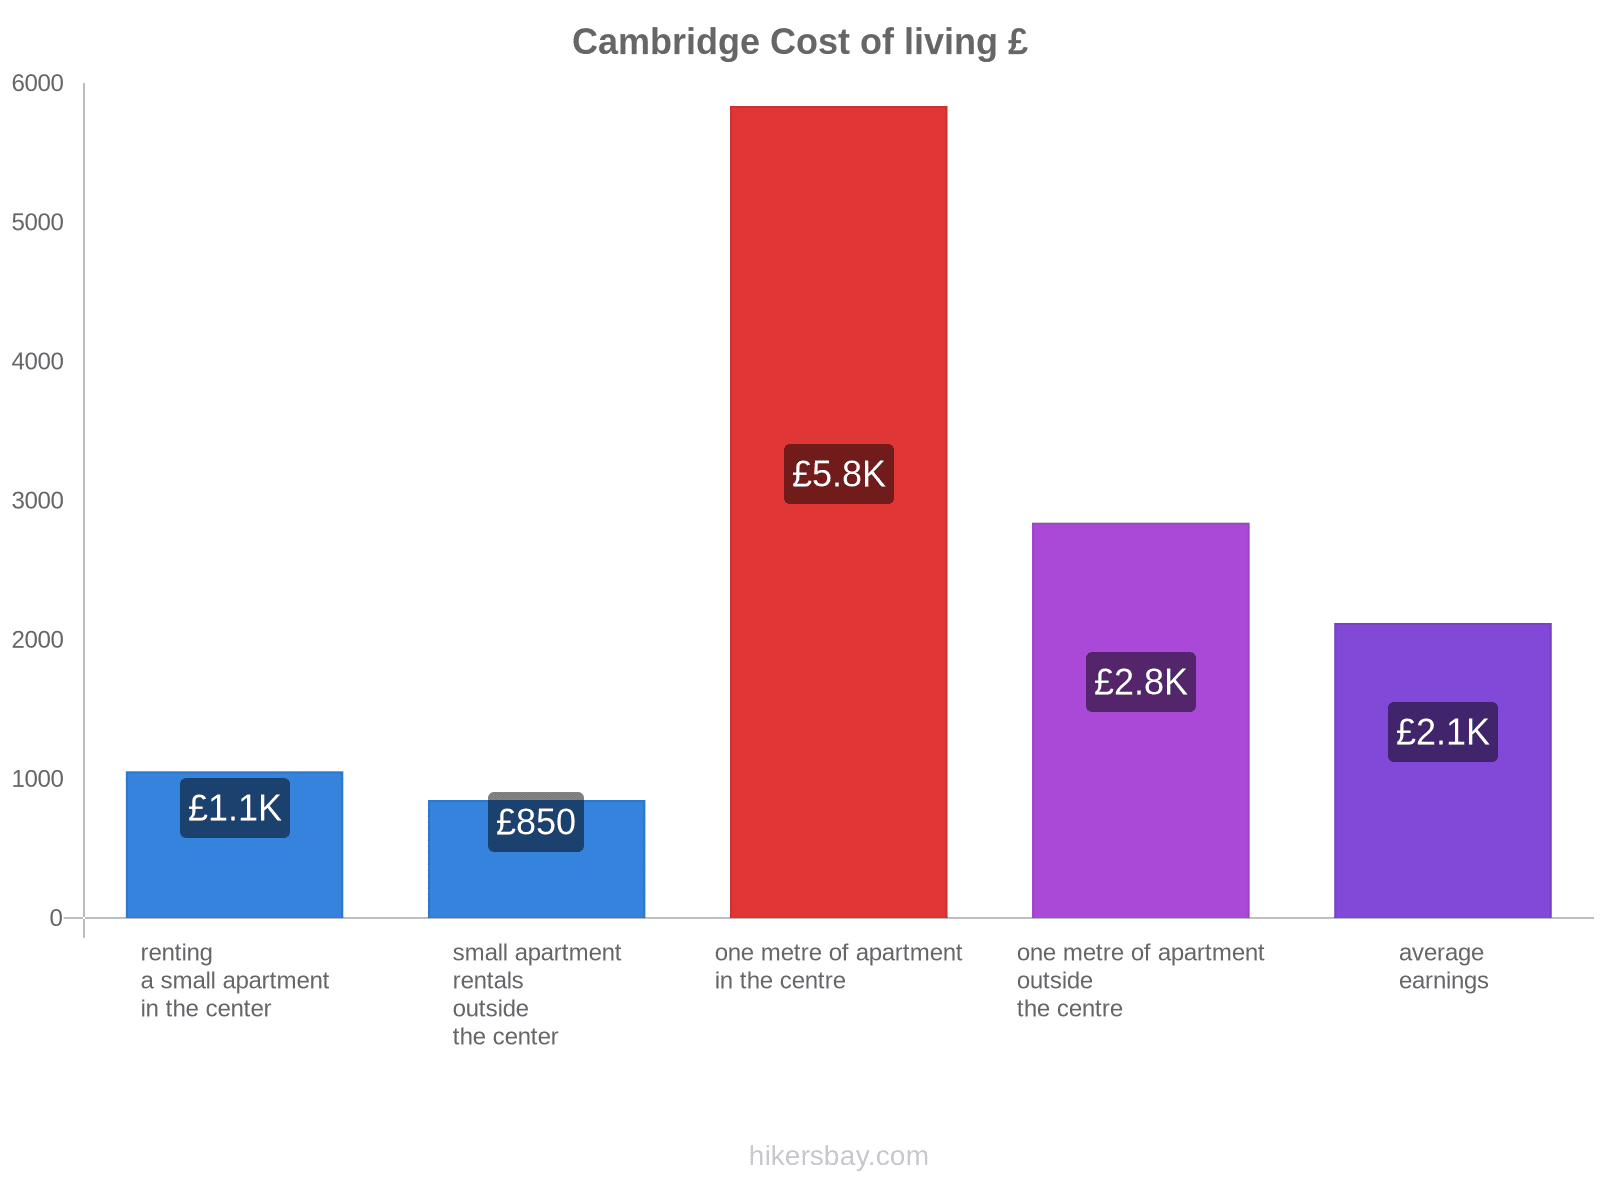 Cambridge cost of living hikersbay.com